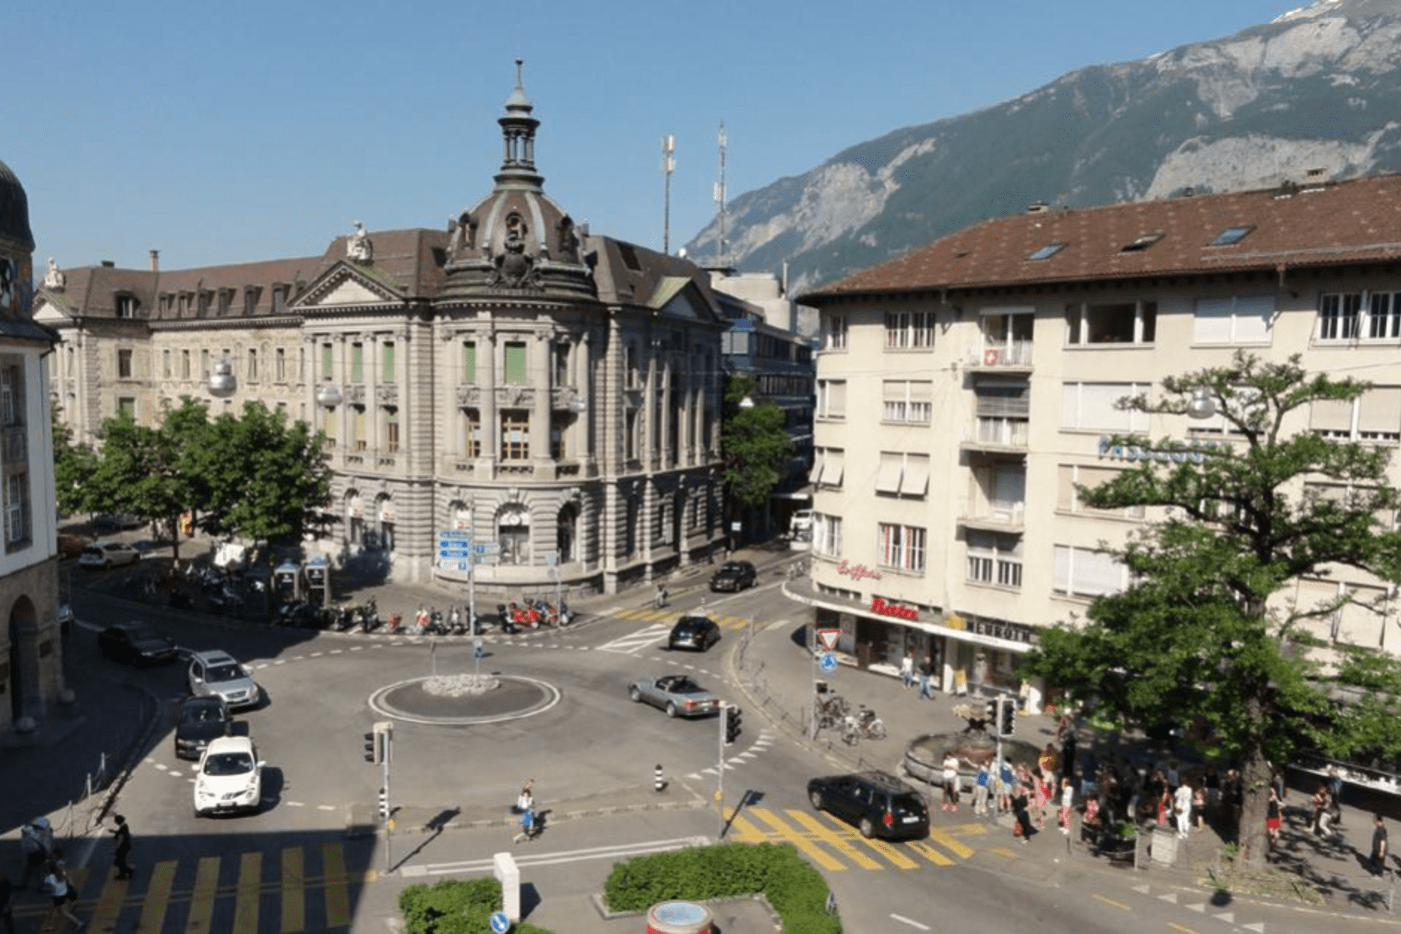 Neugestaltung Postplatz, Chur: Ursprünglicher Zustand mit Kreisel